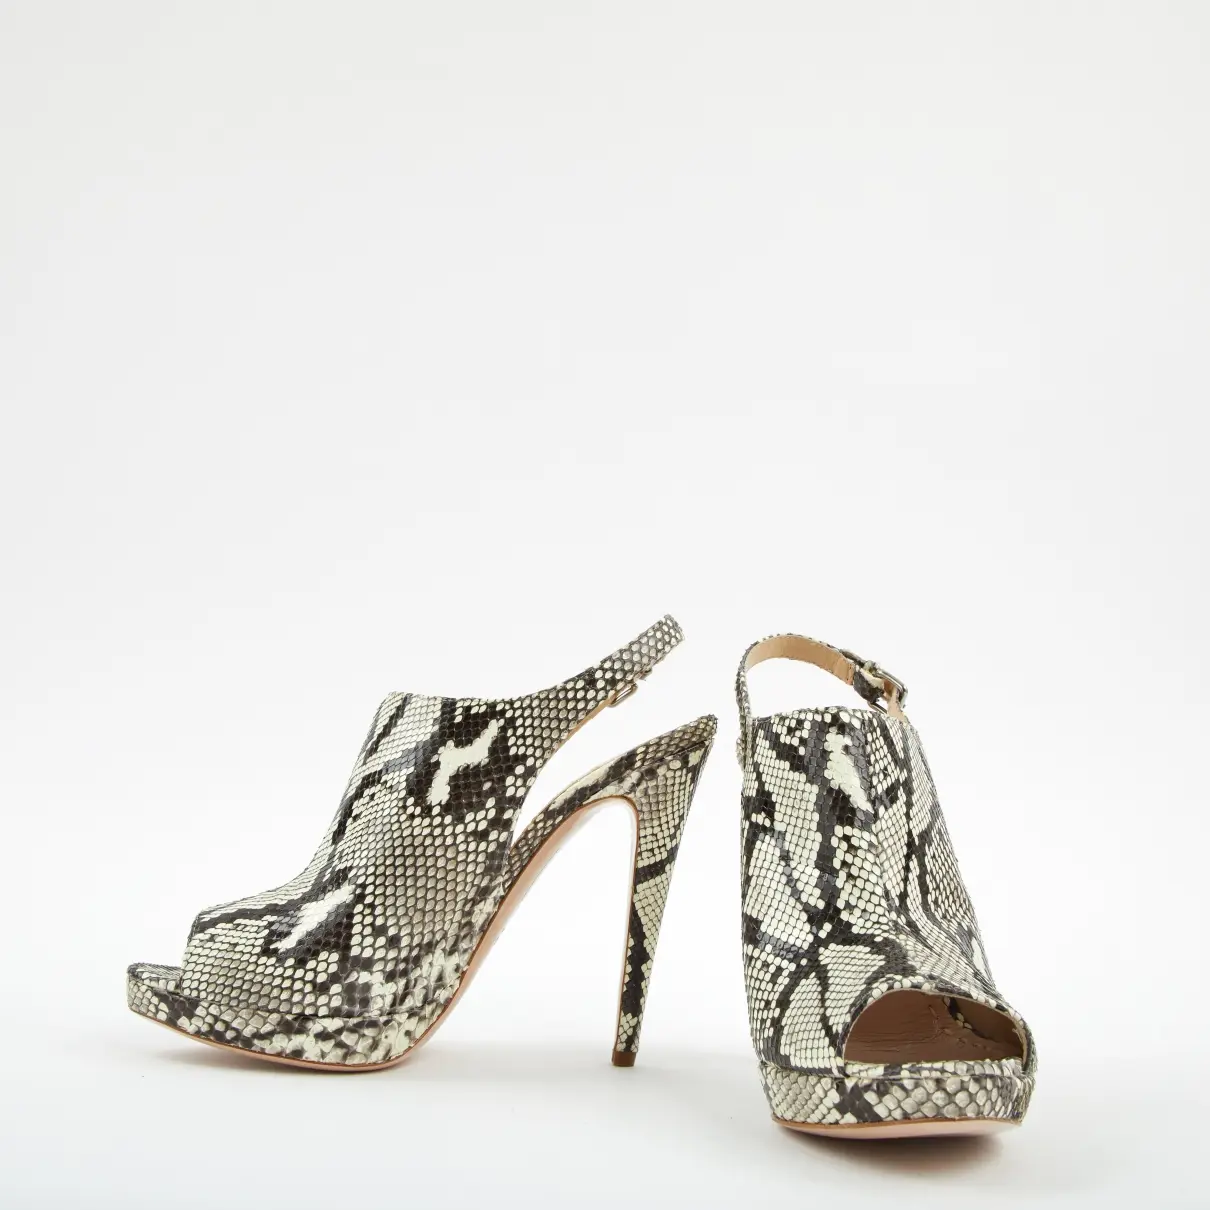 Miu Miu Python heels for sale